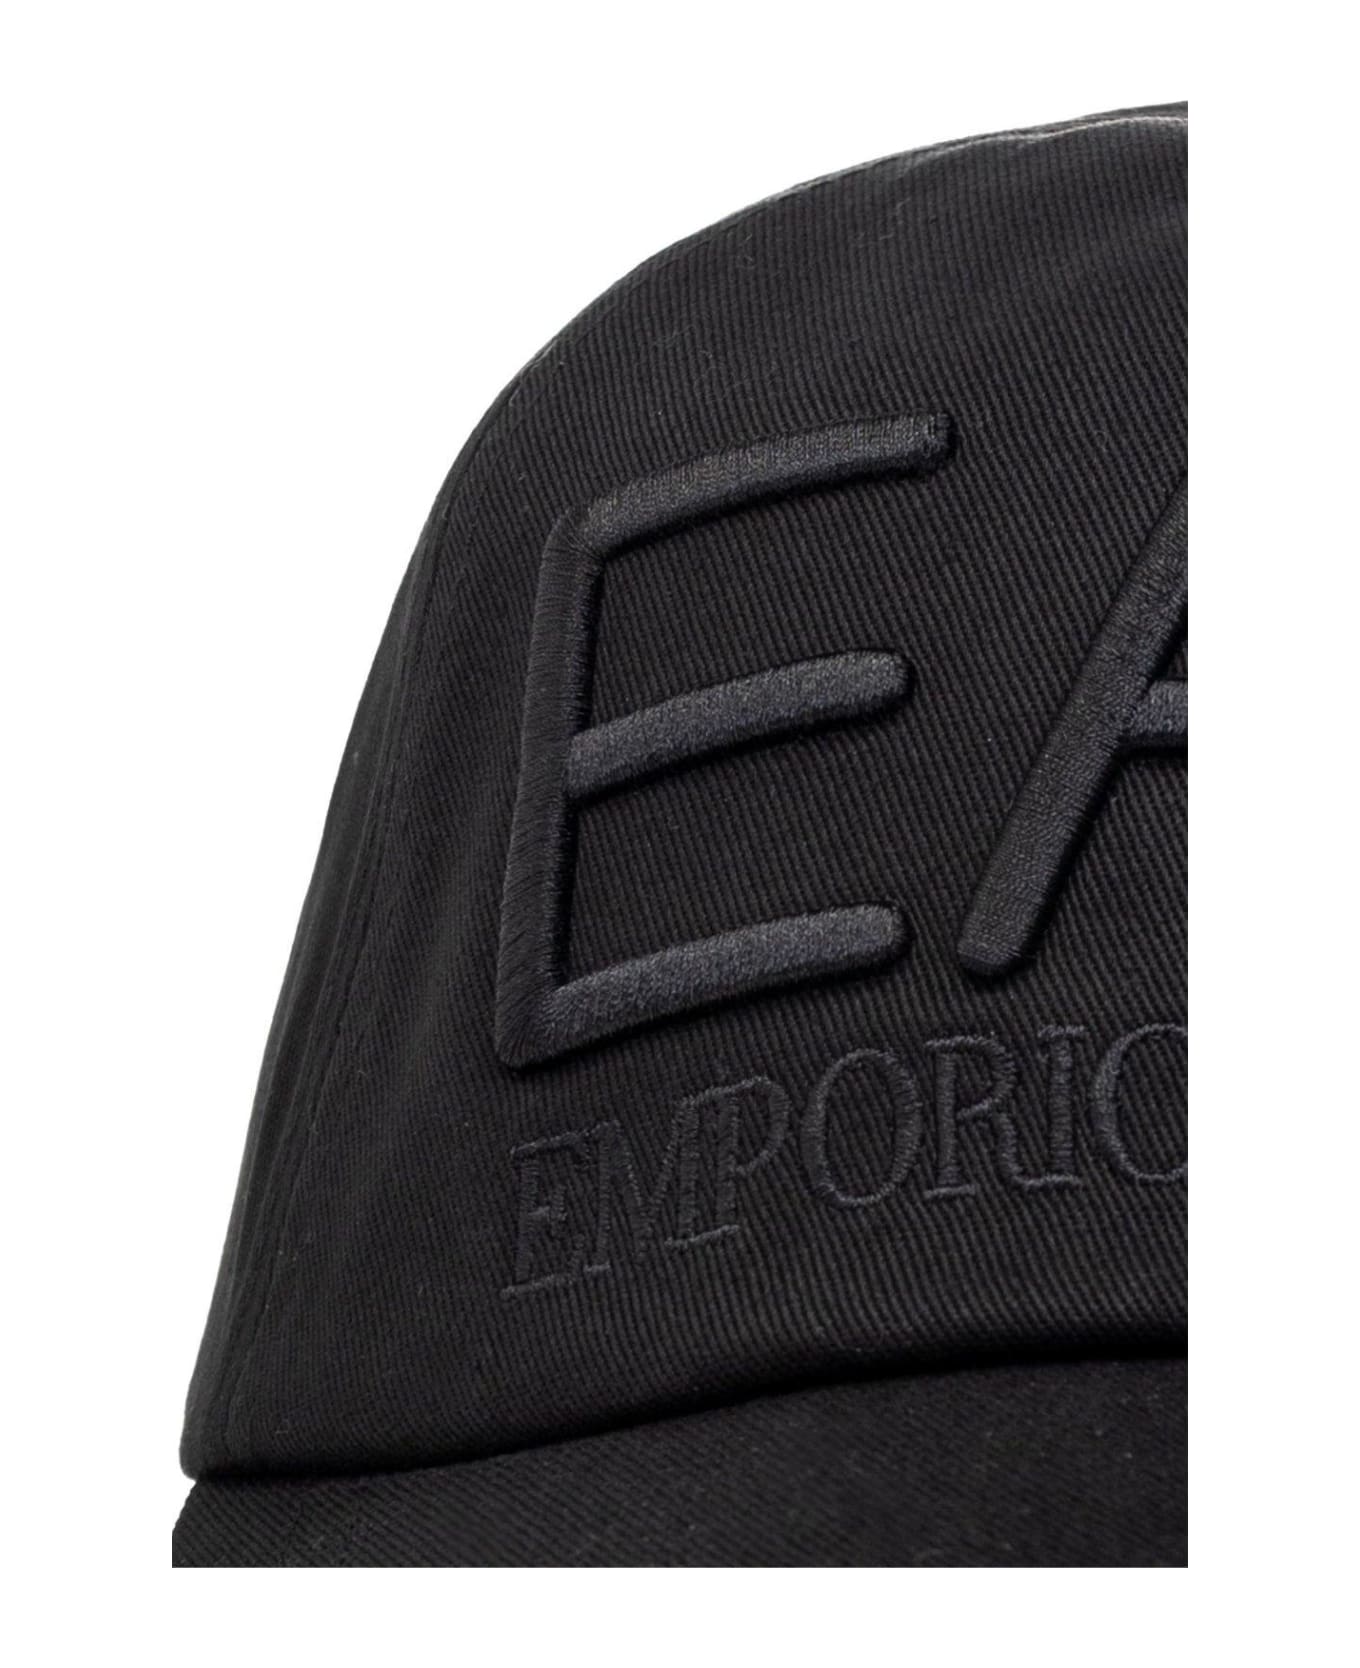 EA7 Logo Embroidered Baseball Cap - Black 1 帽子